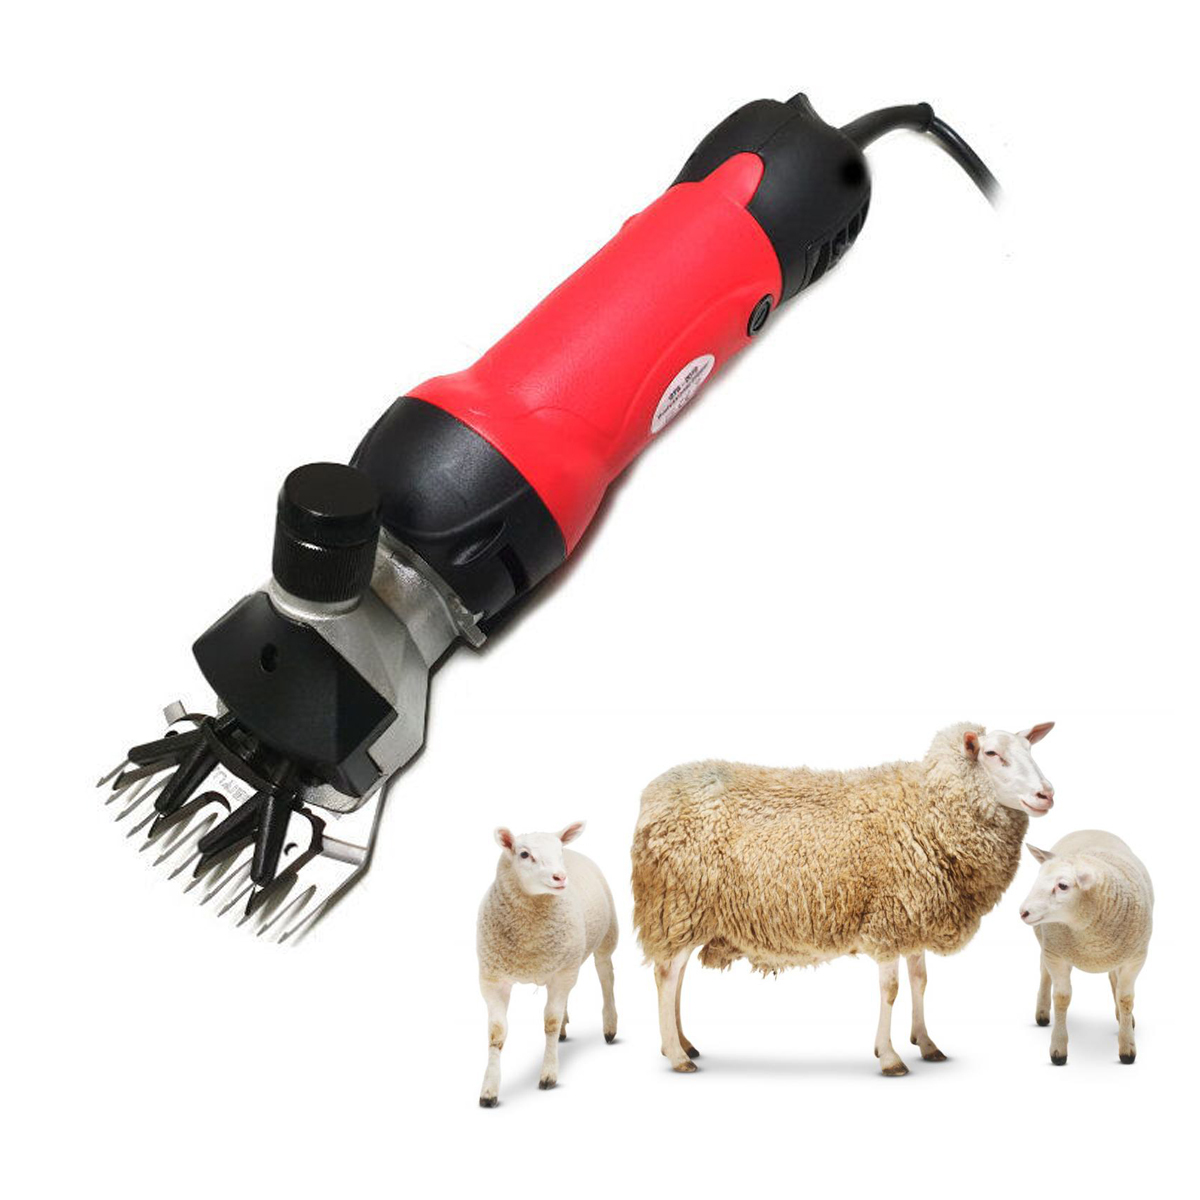 машинка для стрижки шерсти овец умница st020  автоматическая машинка для стрижки баранов  стригальный аппарат